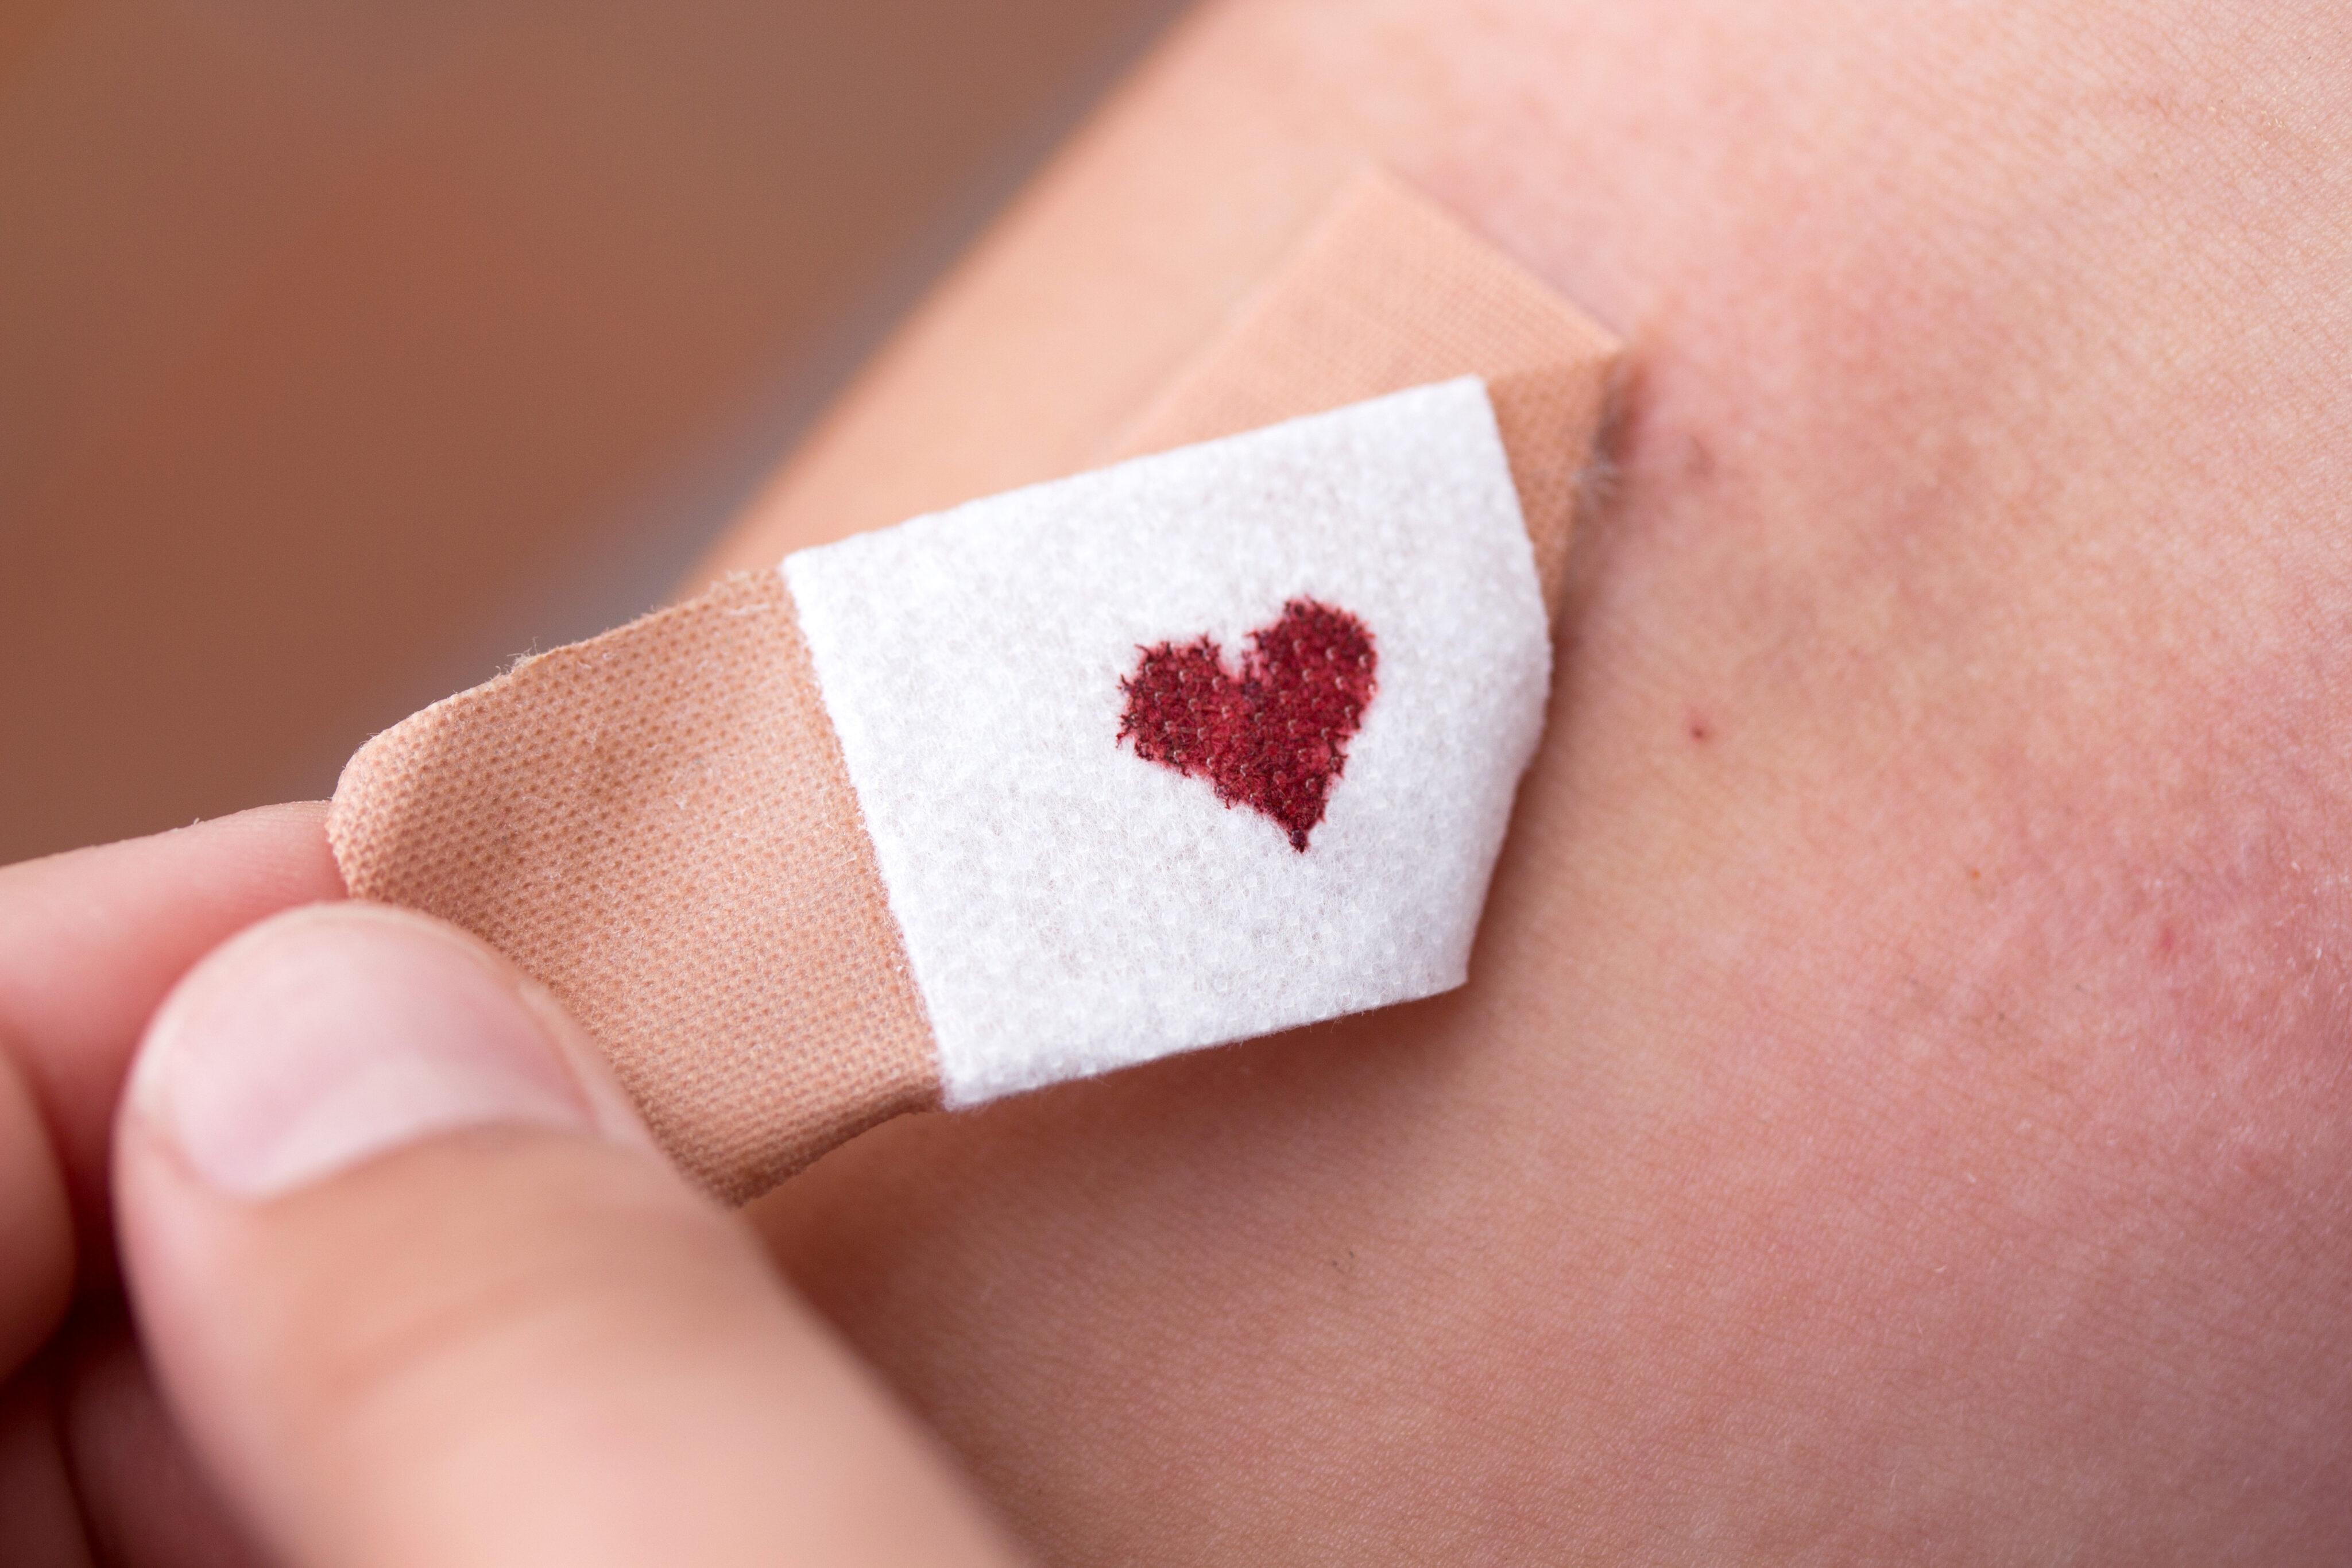 Blutspenden Voraussetzungen: Pflaster beim Abziehen mit herzförmigem Blutstropfen in der Mitte